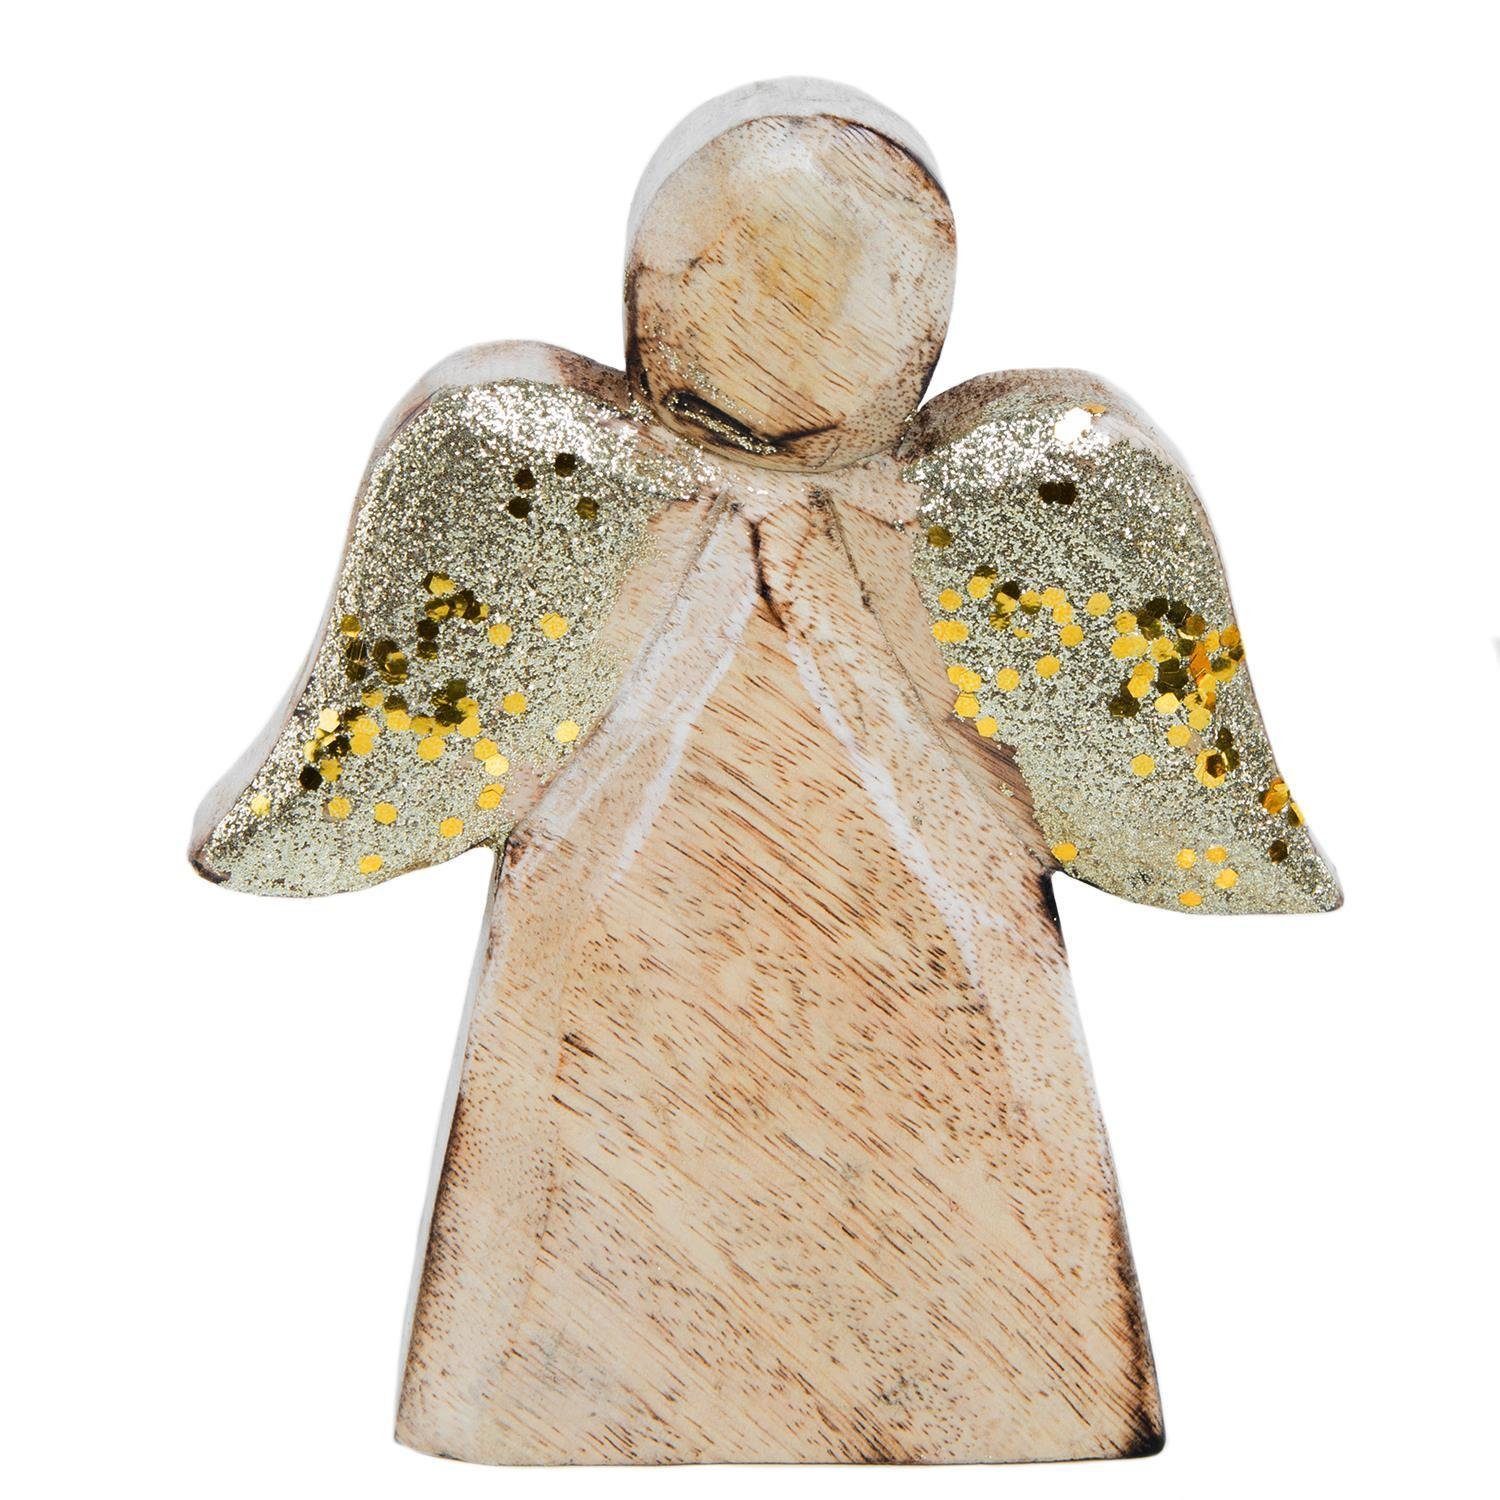 zum Mangoholz St), Logbuch-Verlag aus Flügeln Holzengel Engel Figur goldfarbenen glitzer Weihnachtsfigur (1 mit Hinstellen